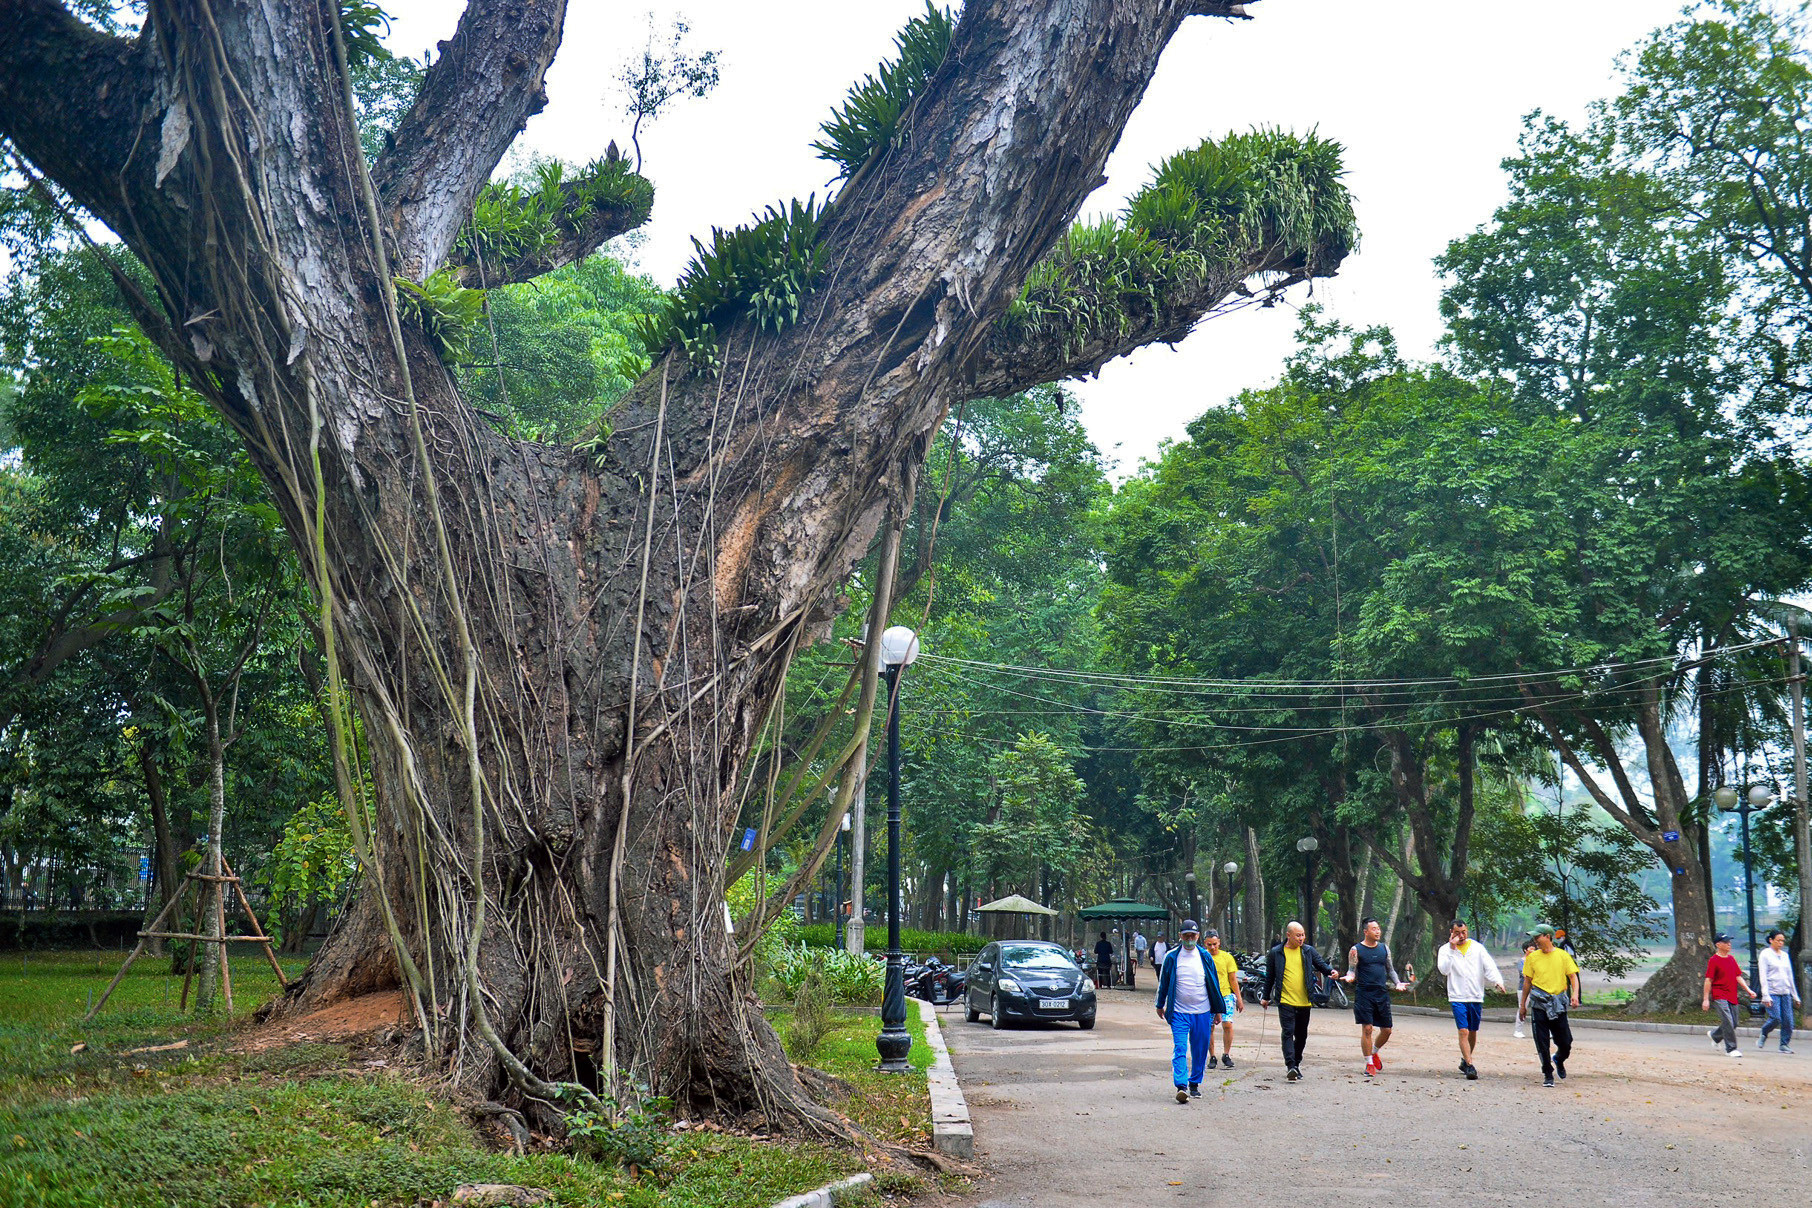 Hàng loạt cây cổ thụ 100 tuổi chết khô ở công viên Bách Thảo